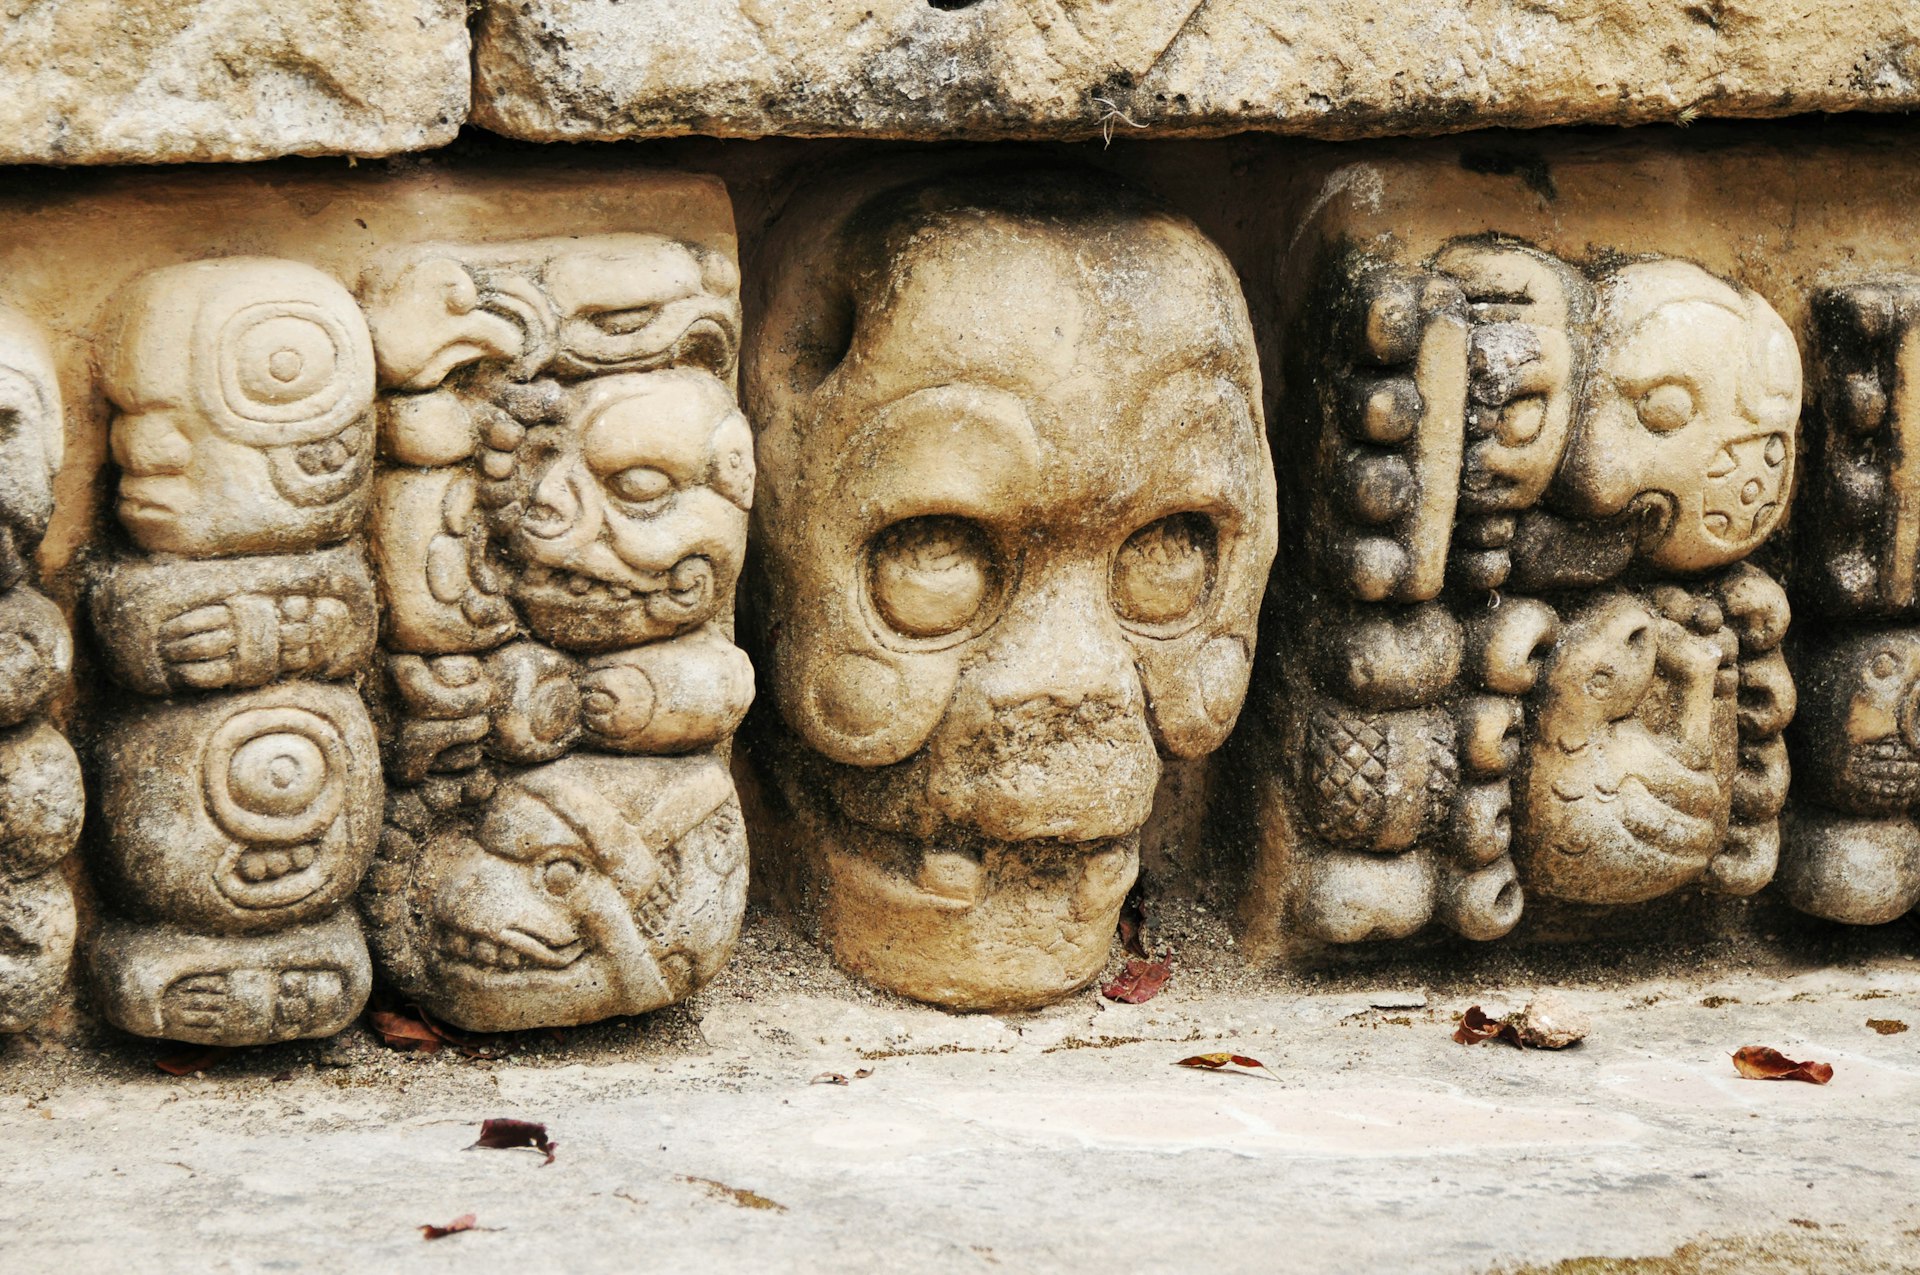 Mayan glyphs at Copan, Honduras